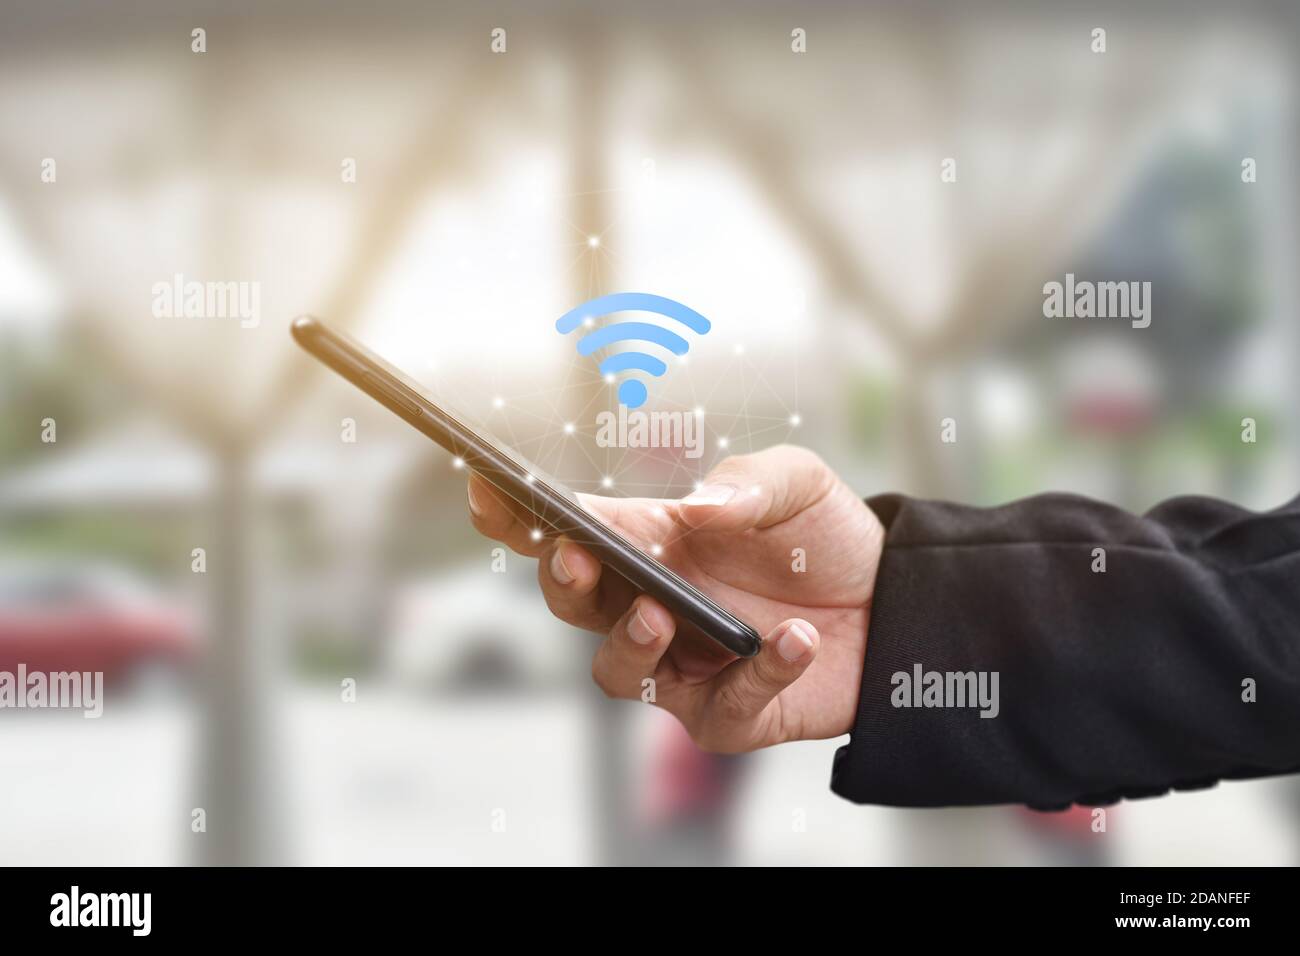 Main tenant à l'aide d'un smartphone mobile avec icône wi-fi. Idée de réseau social de communication d'entreprise. Banque D'Images